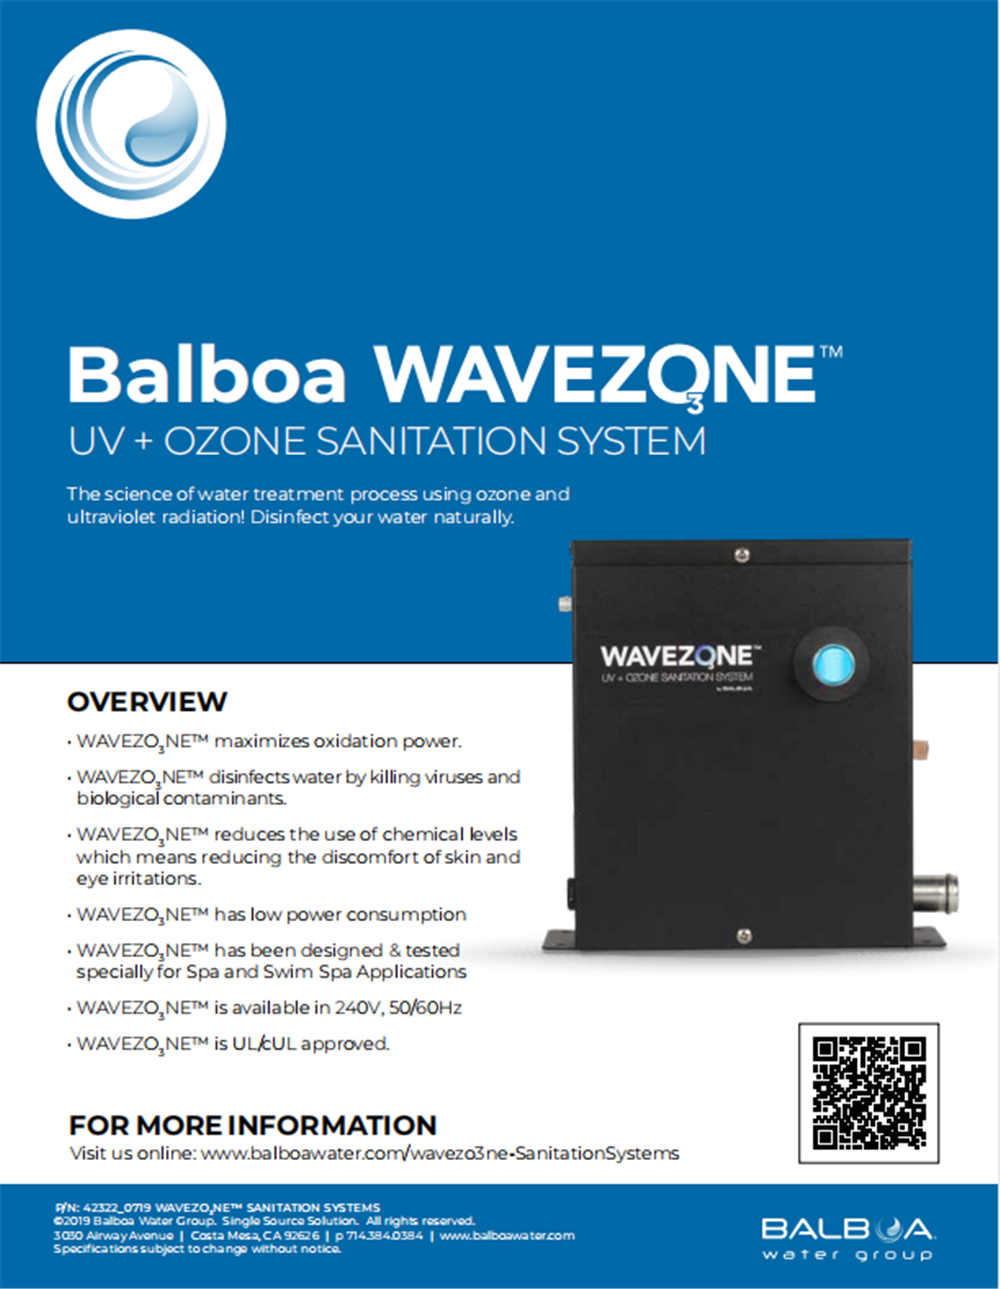 Balboa | UV + OZONE SANITATION SYSTEM